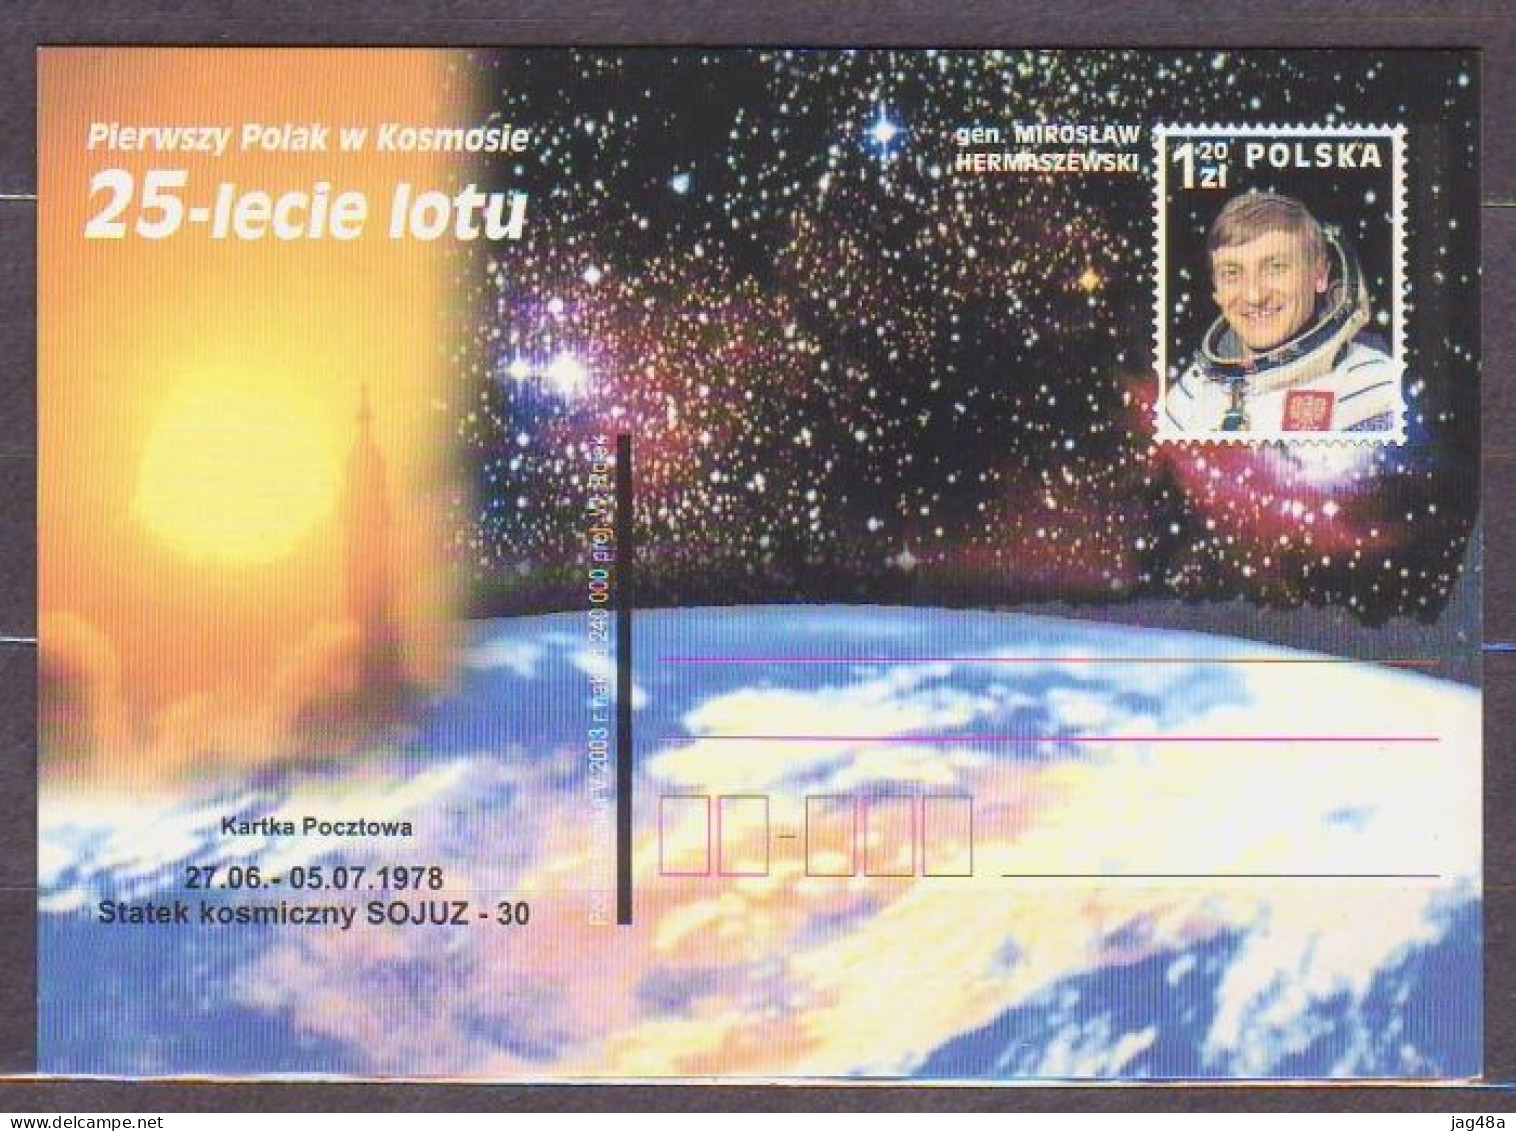 POLAND..2003/Mirosław Hermaszewski - 25th Anniversary Spaceflight,Soyuz30.. PostCard/unused. - Lettres & Documents